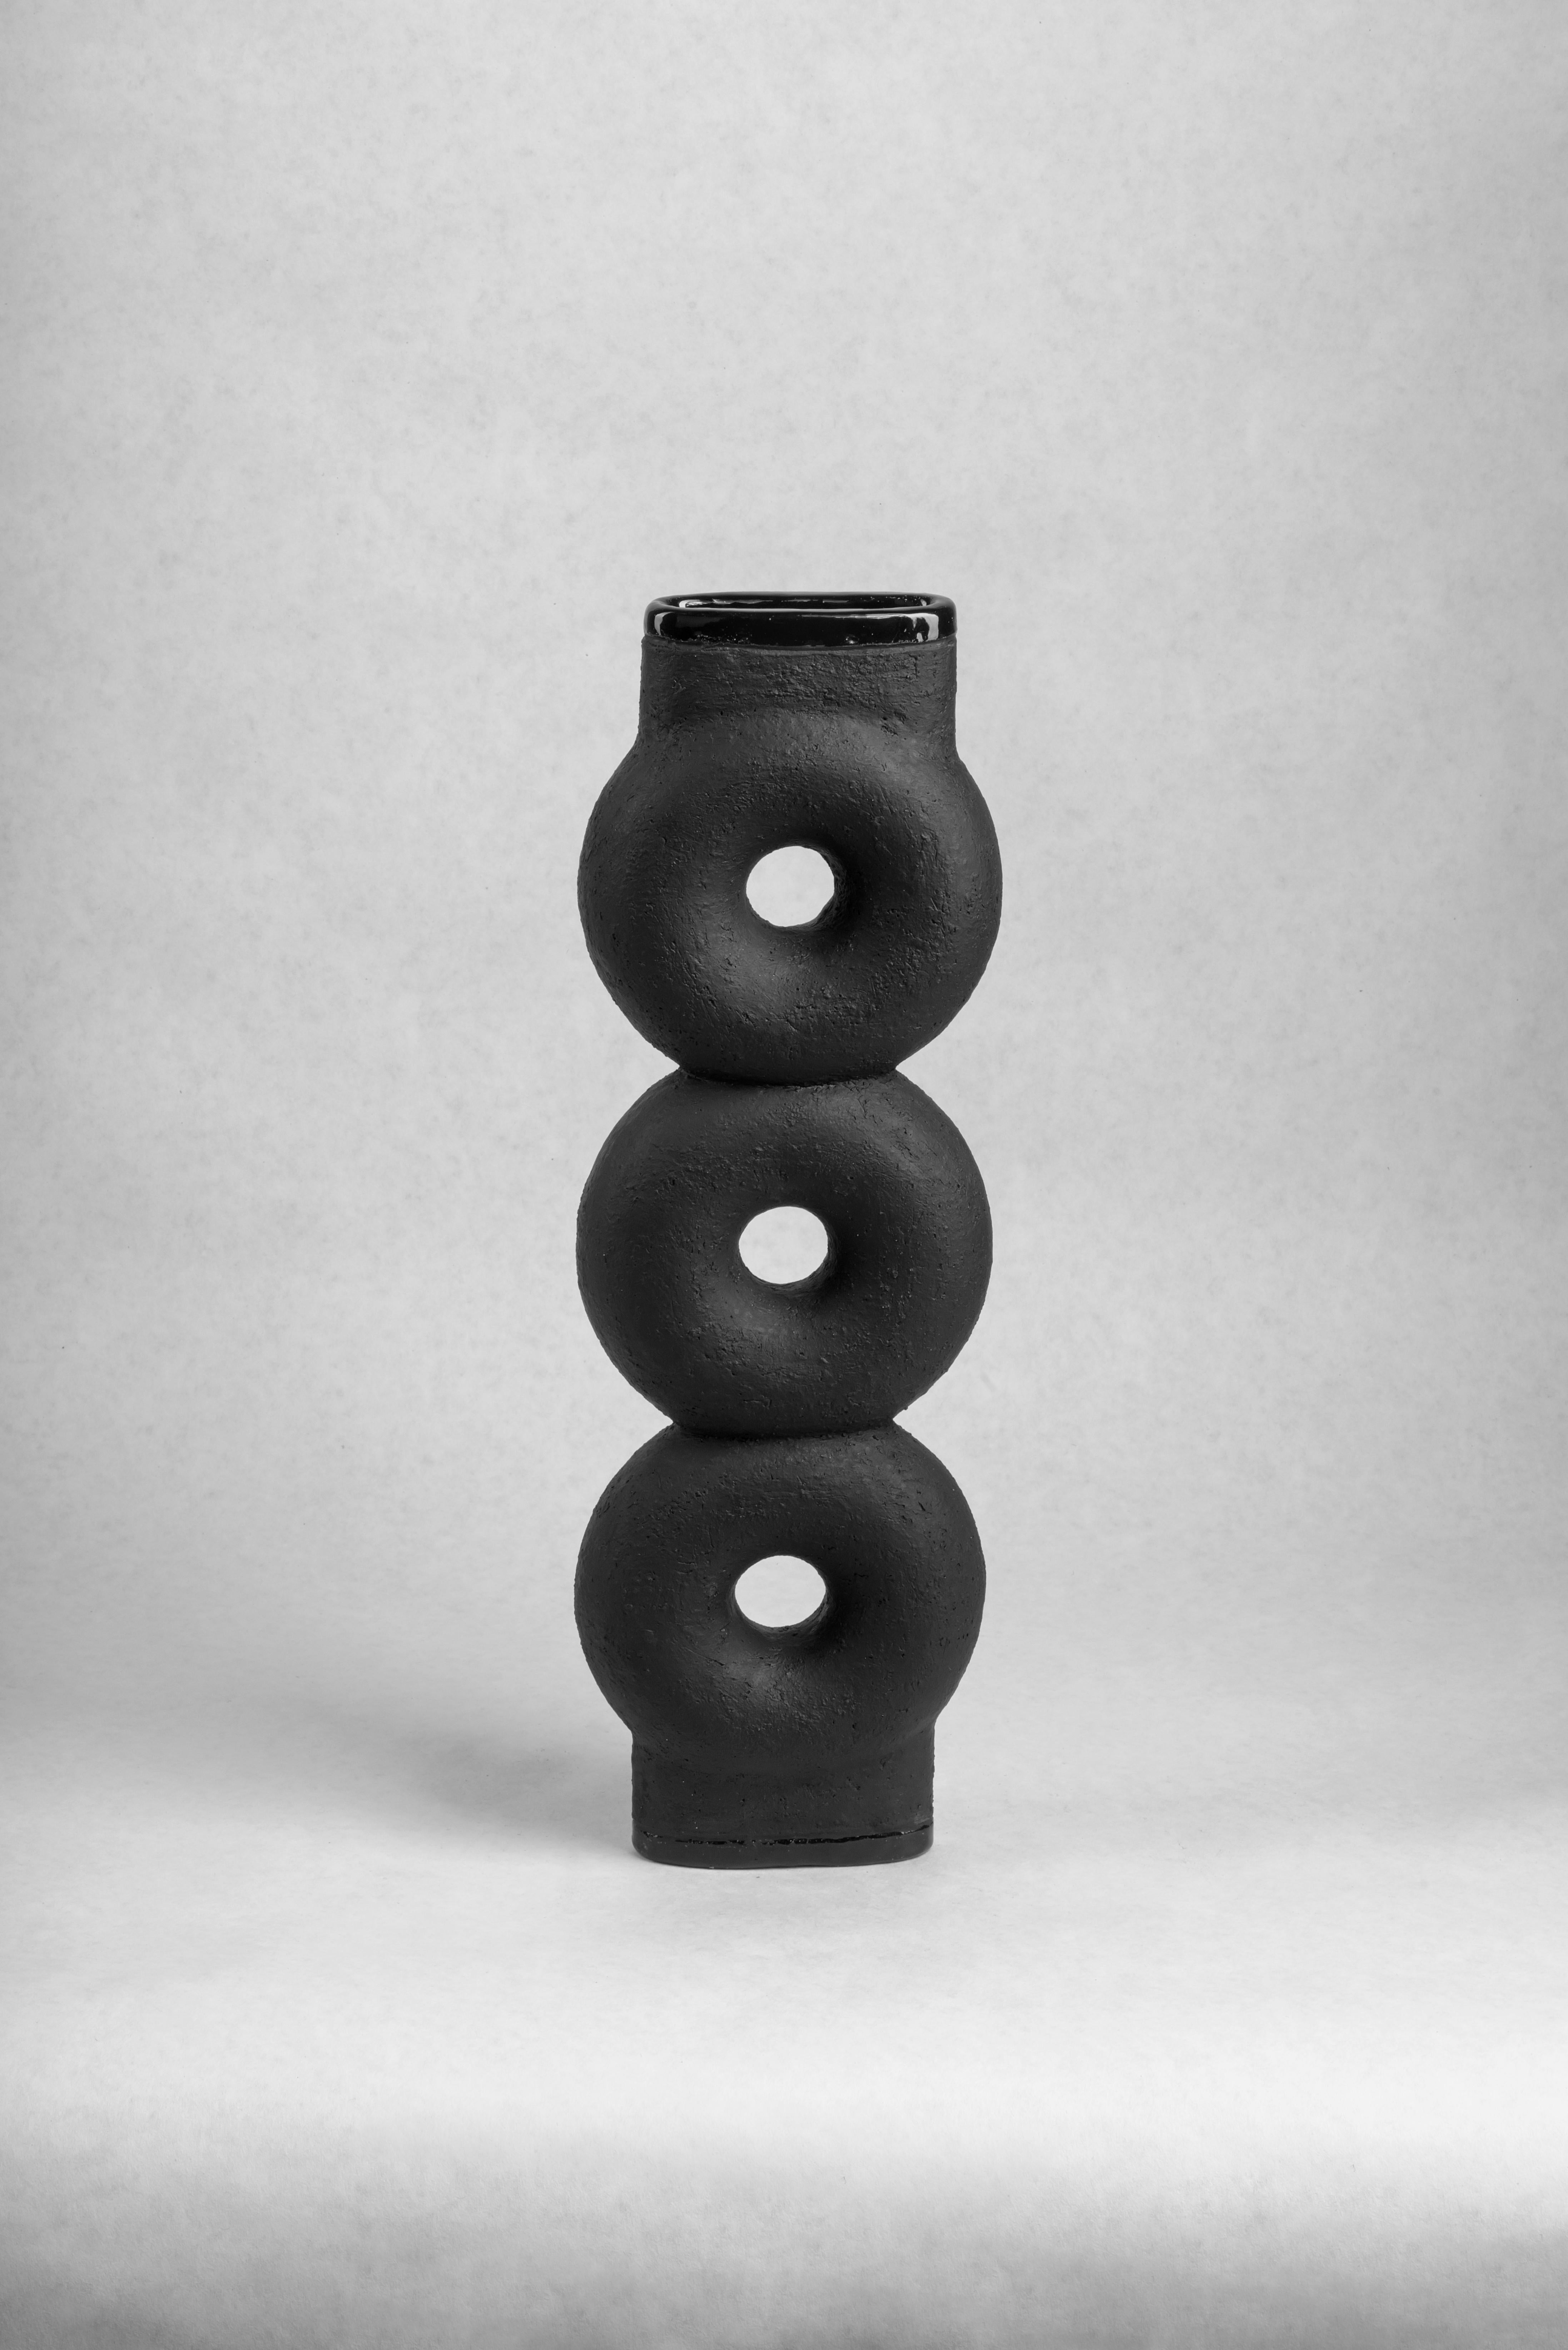 Geformte Keramikvase von FAINA (Paar)
Entwurf: Victoriya Yakusha
MATERIAL: Ton/Keramik
Abmessungen: 14 x 5 x H 43,5 cm


Die Vase ist Teil einer Serie von 5 Vasen, der Satz von Vasen besteht aus:

1. Vase auf drei Beinen Höhe 500 x Breite